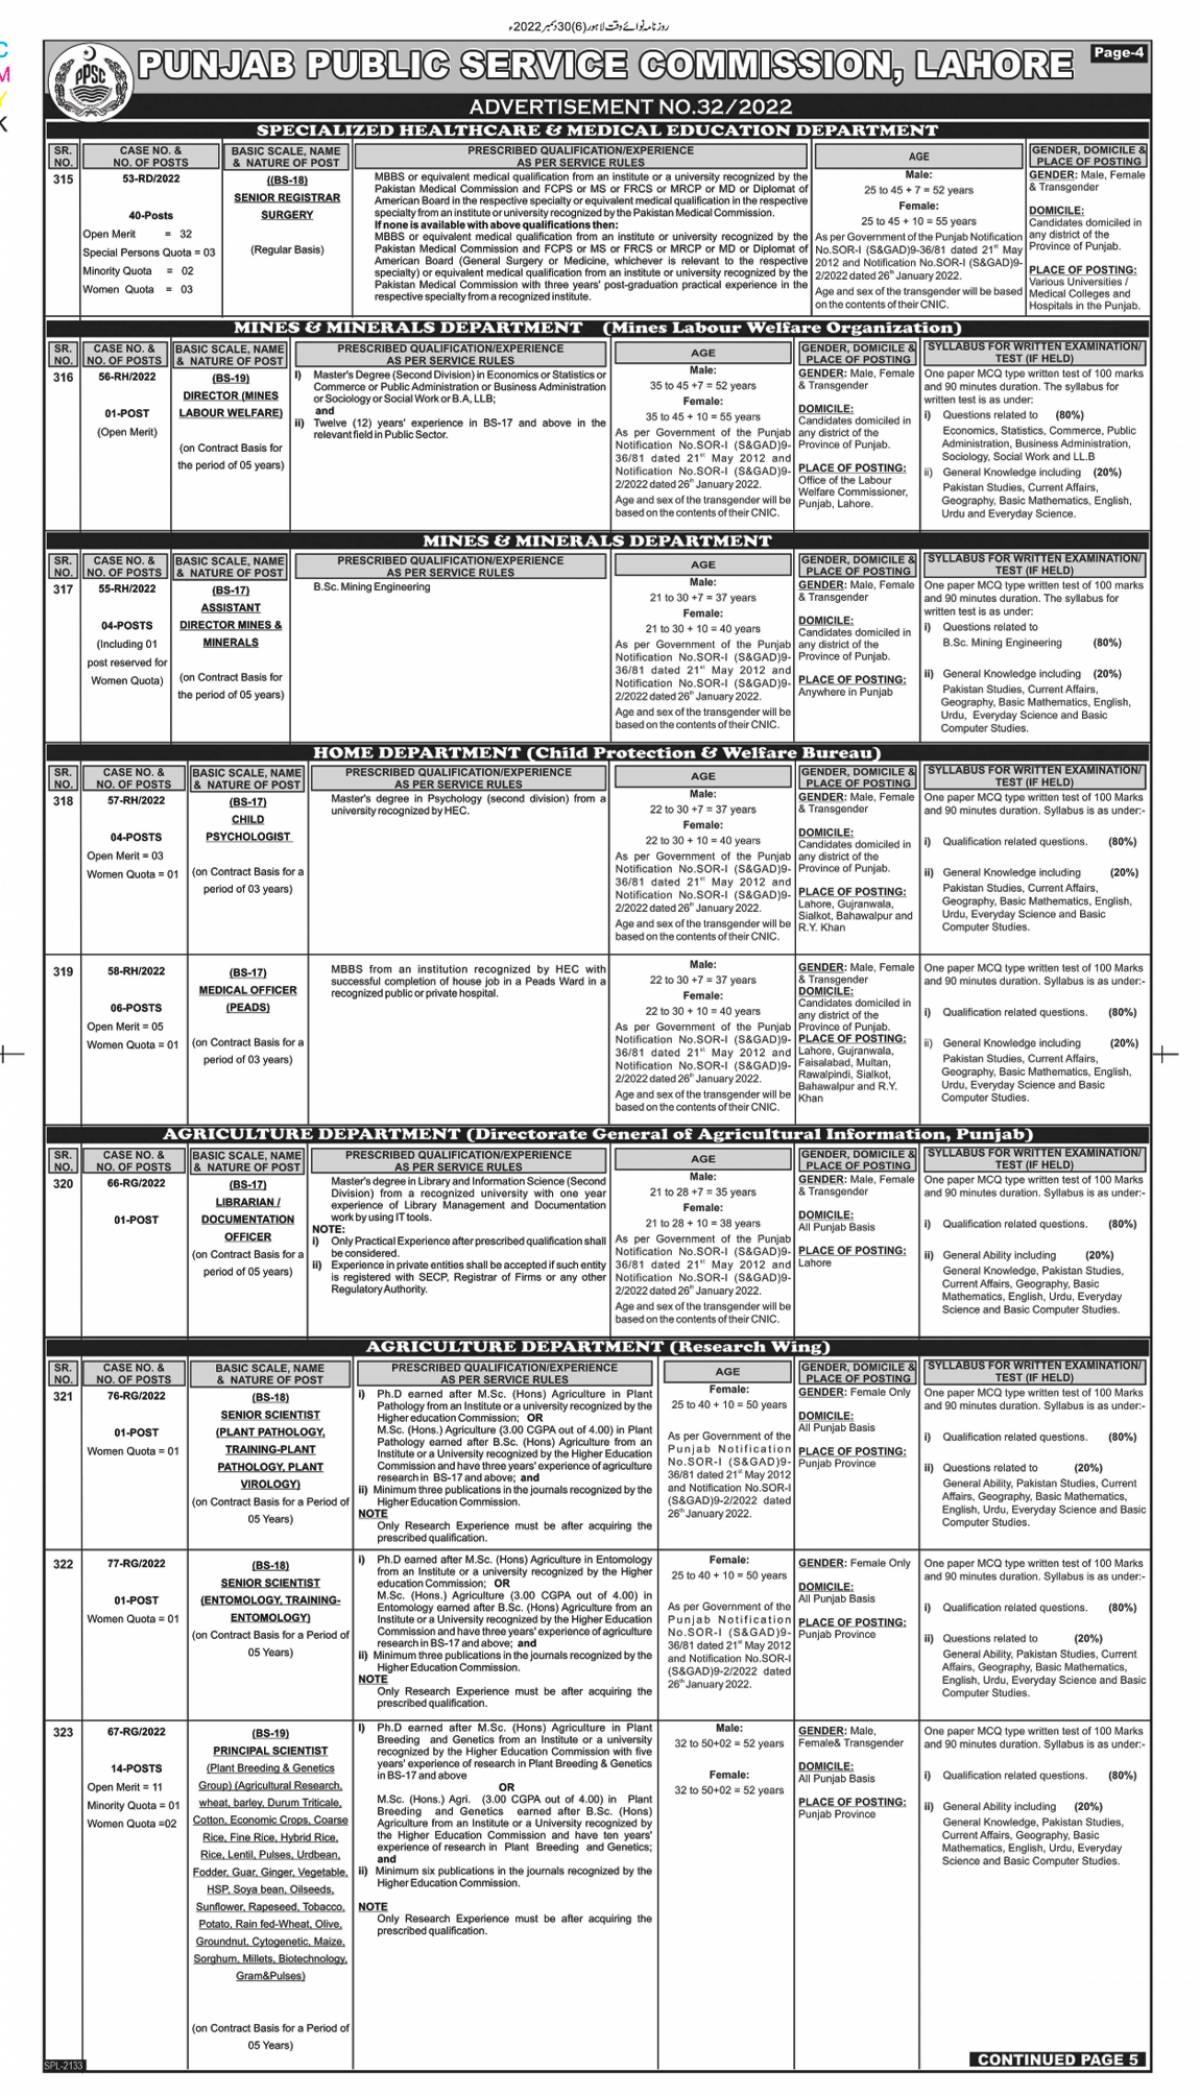 Punjab Public Service Commission Jobs 2023